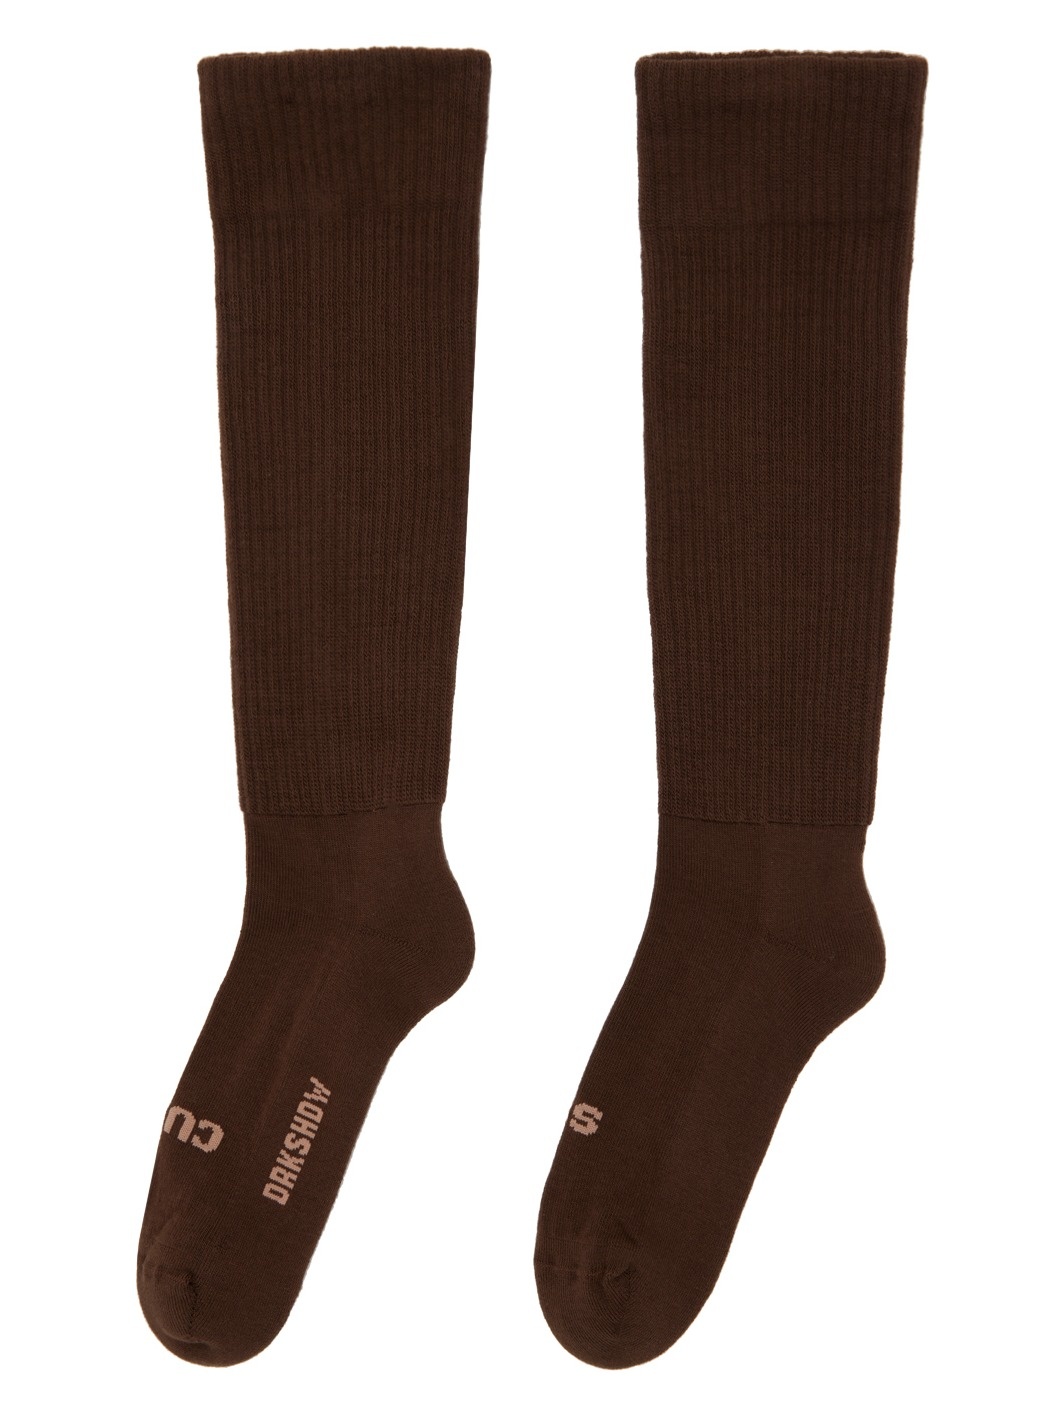 Brown 'So Cunt' Socks - 2